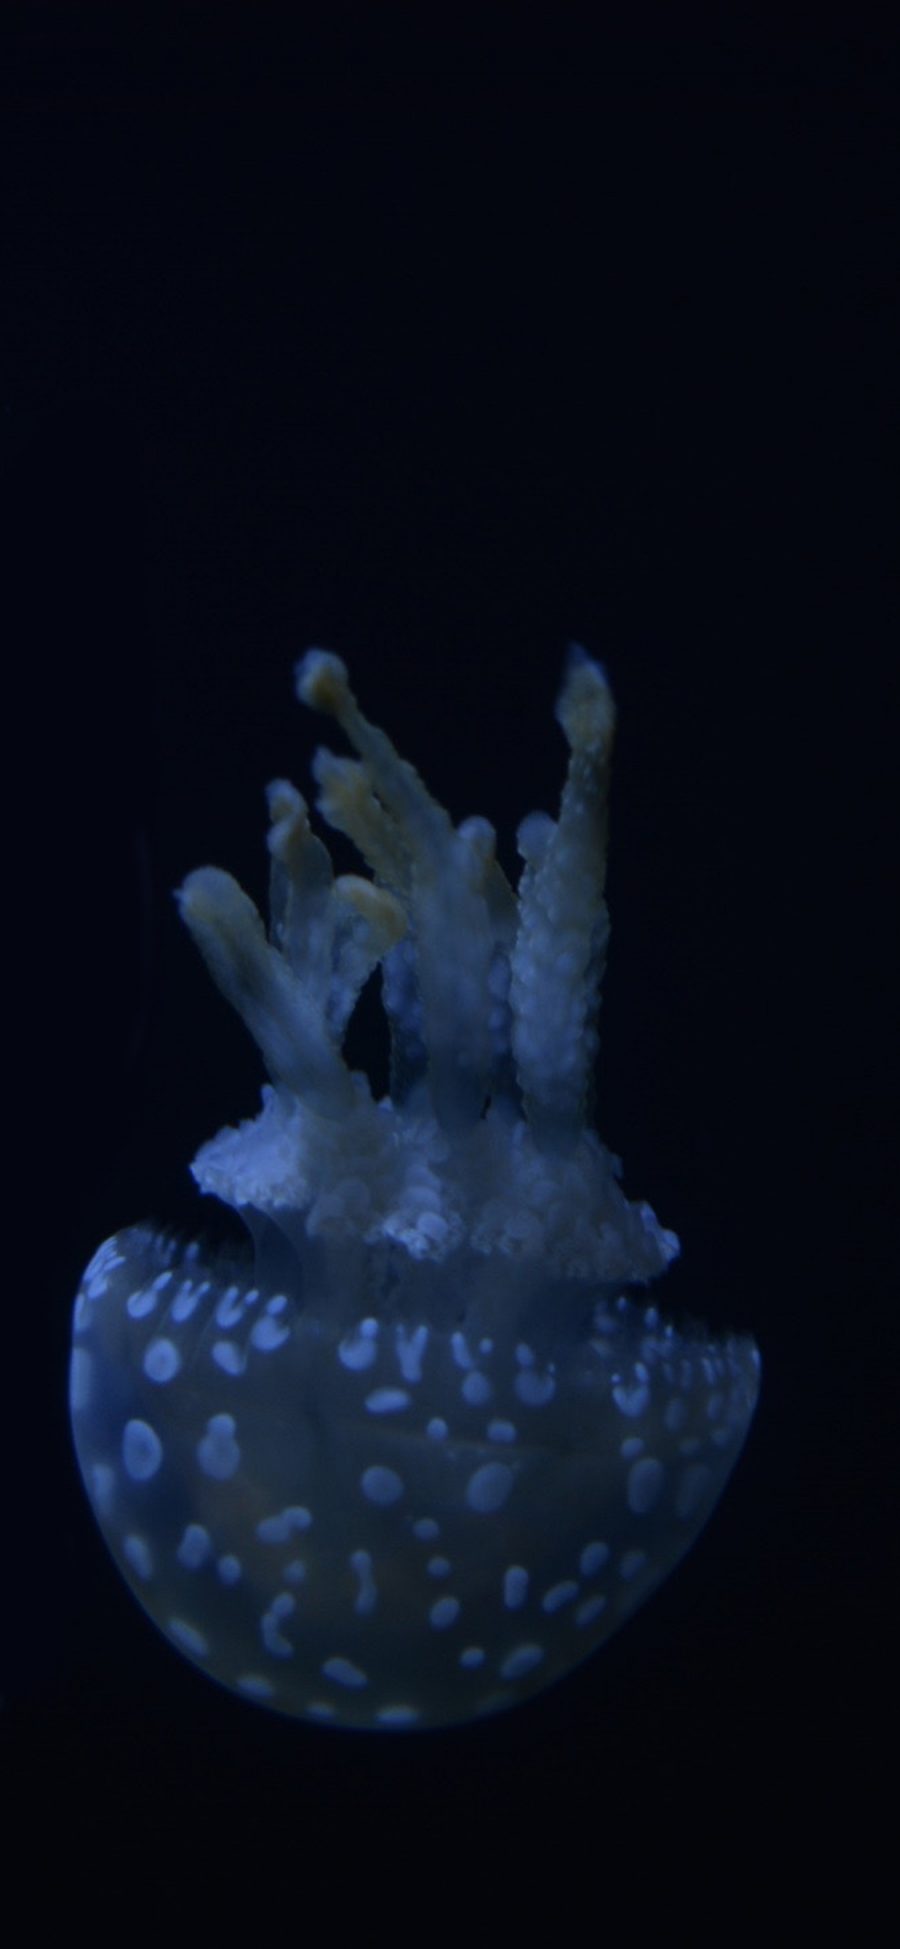 [2436×1125]水母 海洋生物 荧光 创意 苹果手机壁纸图片